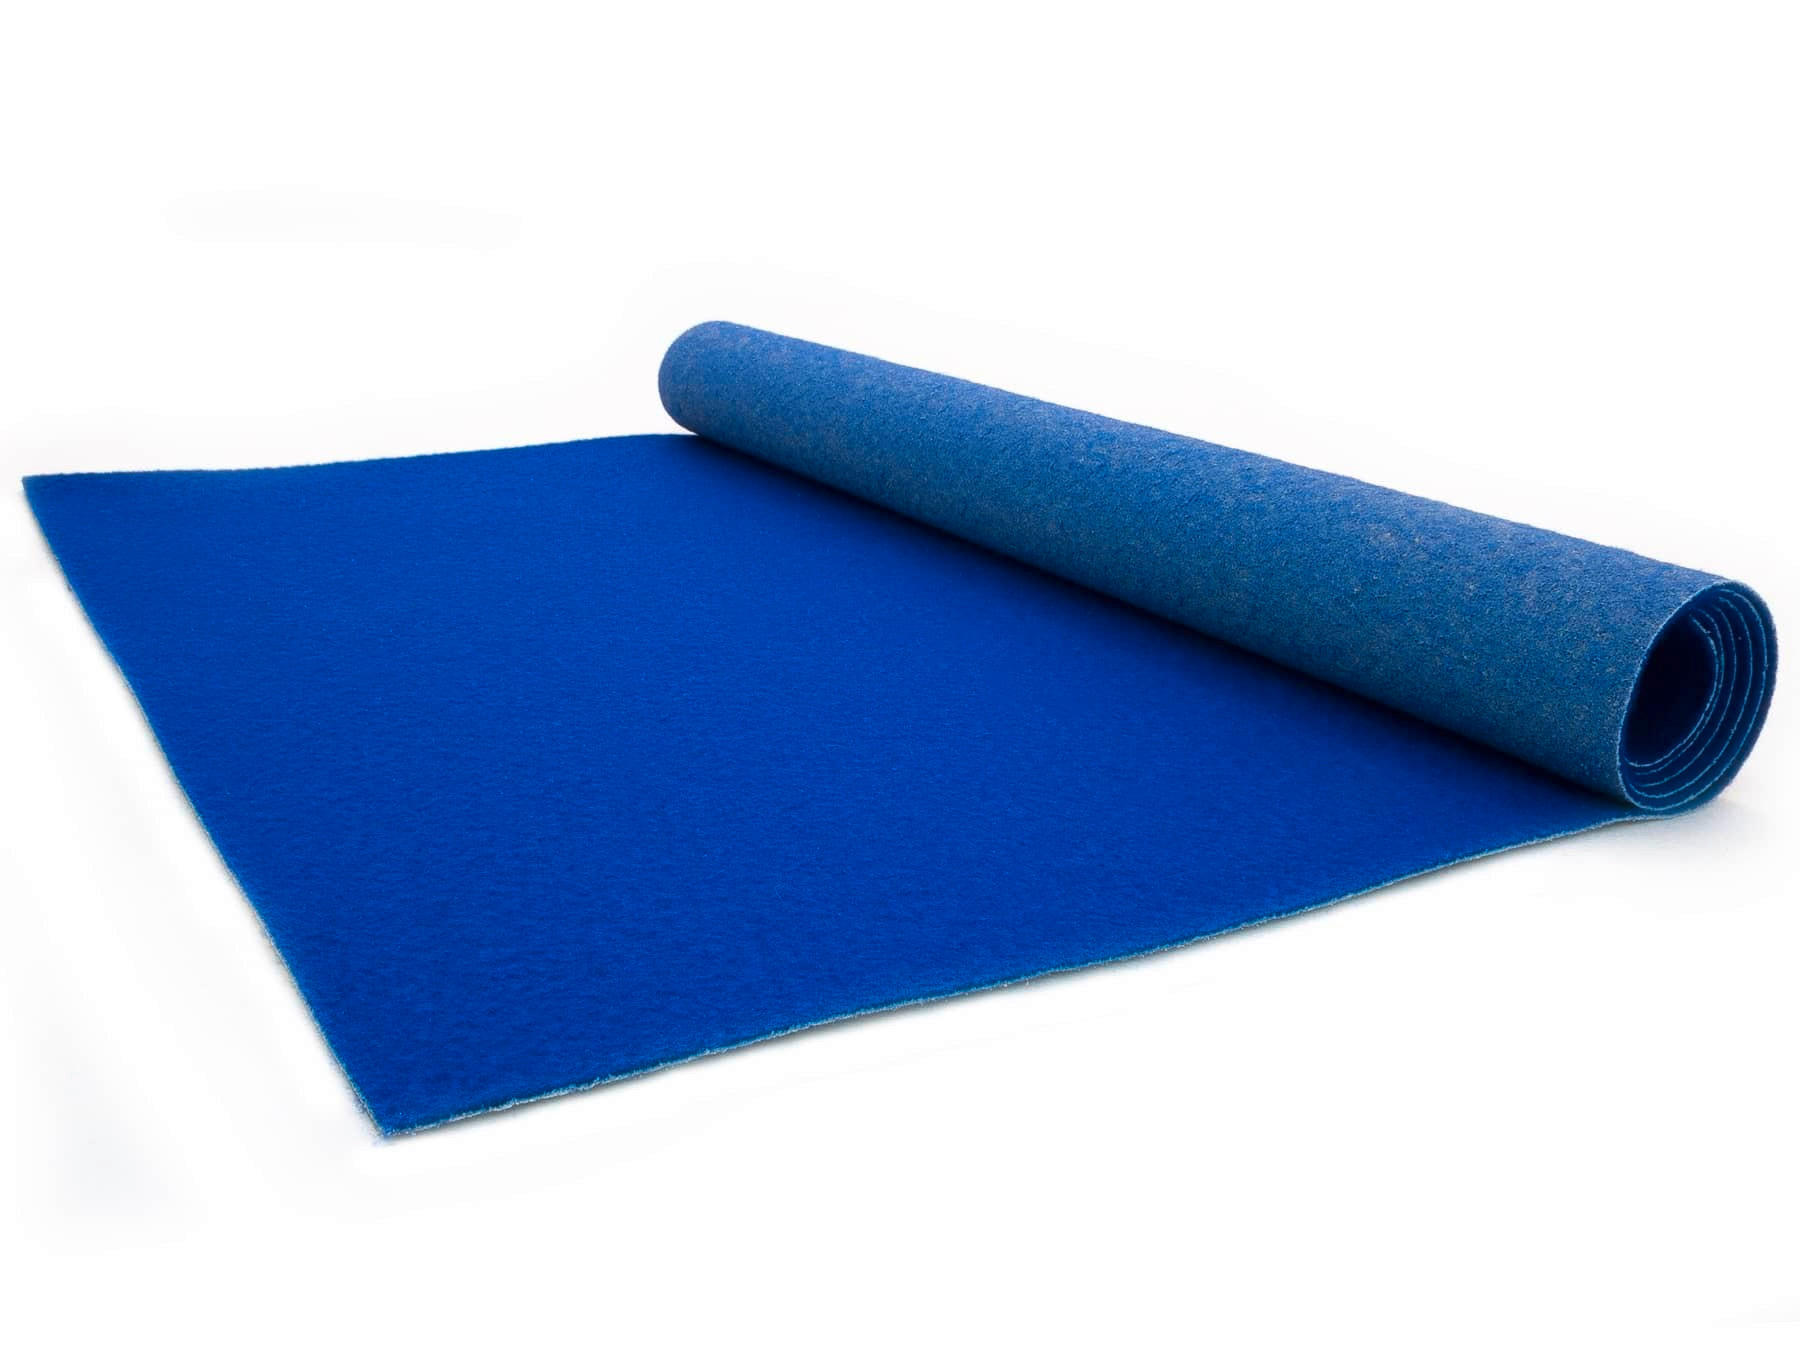 LÄUFER 100/2300 cm Platea  - Blau, Basics, Textil (100/2300cm)